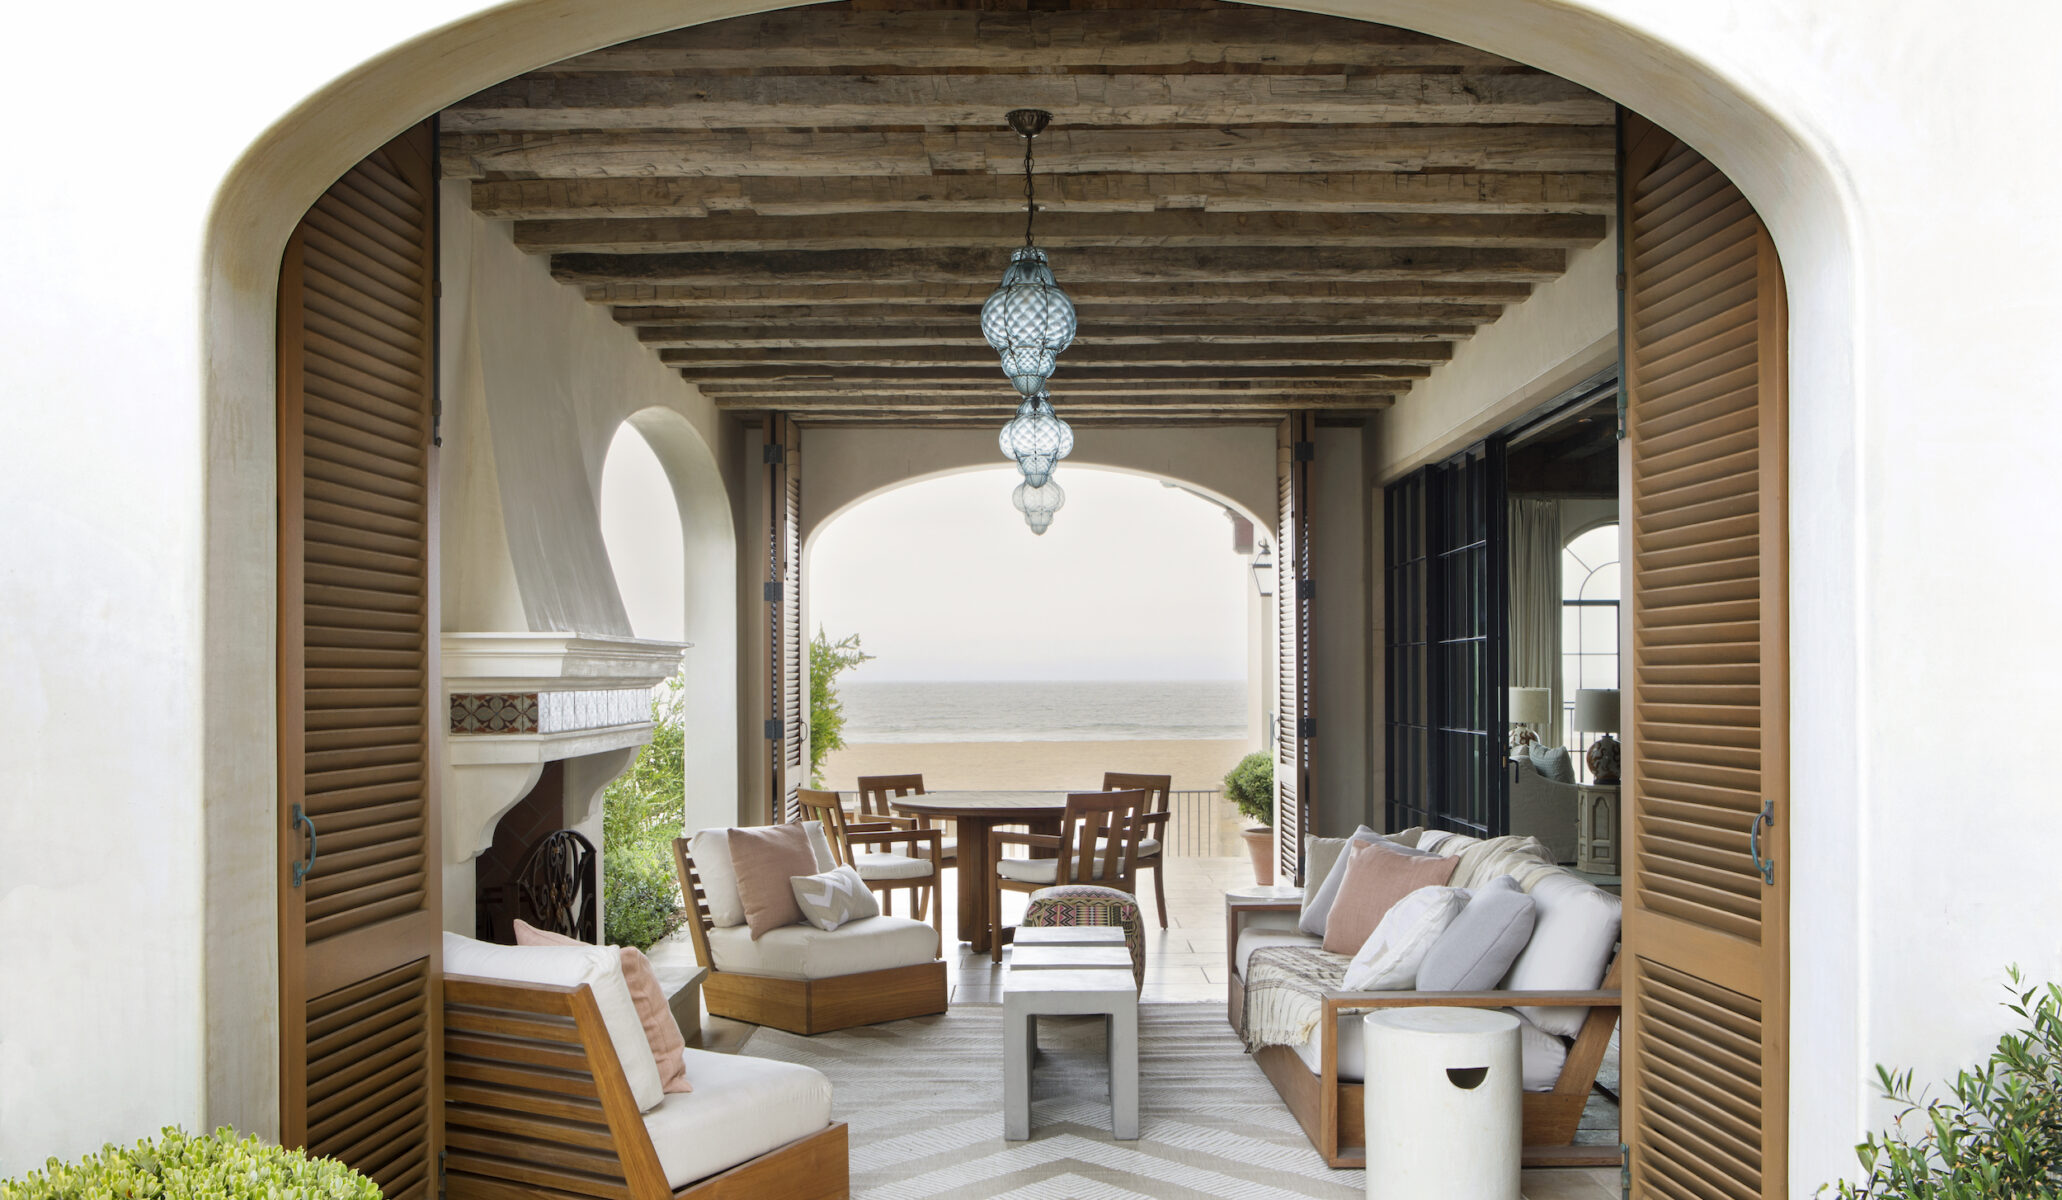 Hermosa Beach Heirloom - Interior Design by Tim Clarke